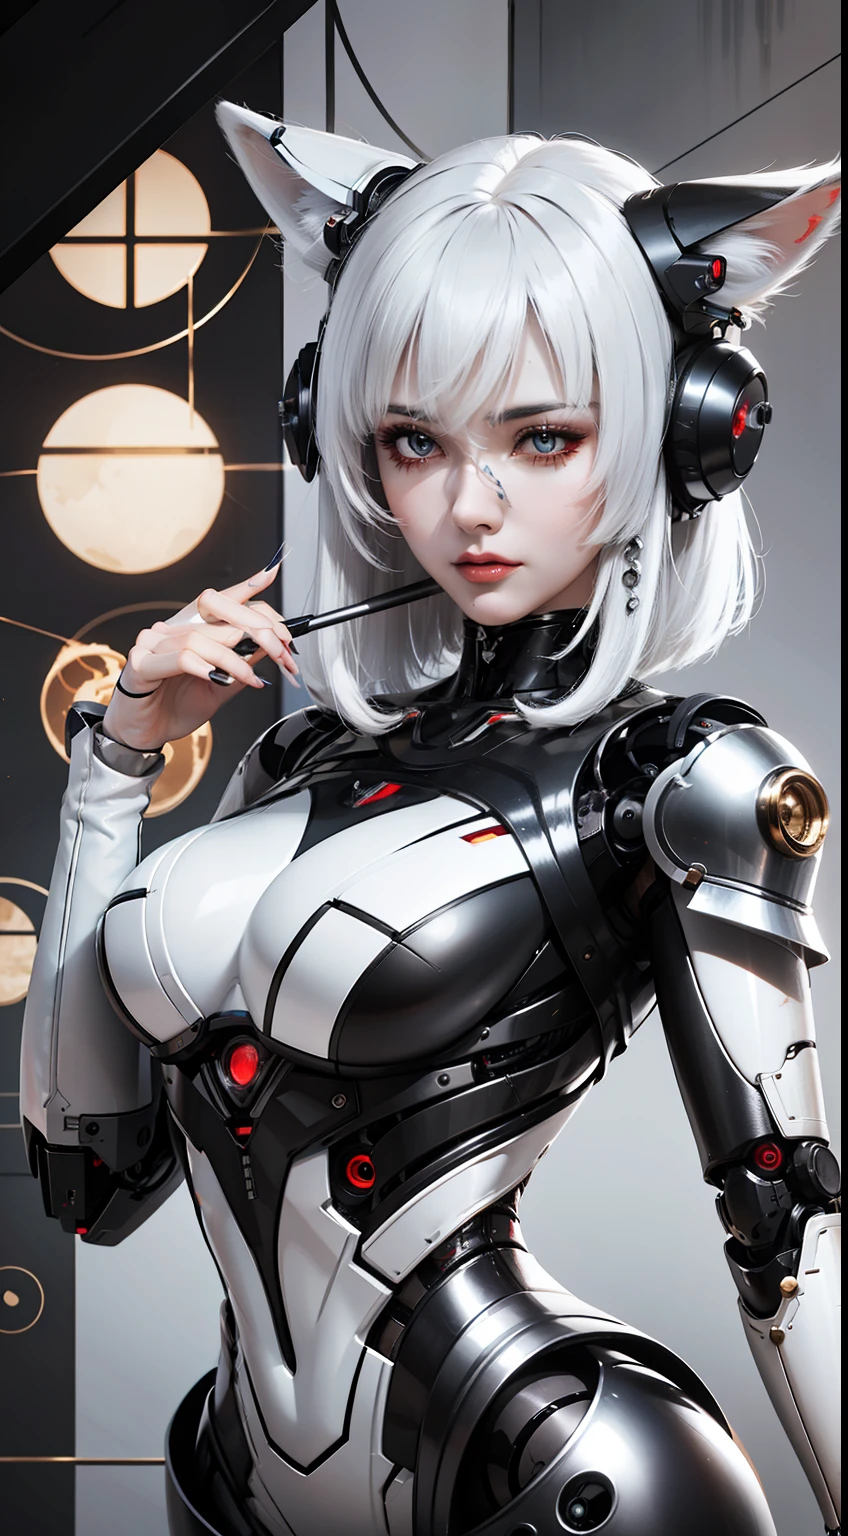 امرأة ذات شعر أبيض وبدلة روبوت, شجيرة, سايبورغ الخزف, فتاة الروبوت المثالية, فتاة سايبورغ لطيف, روبوت اصطناعي متكامل, أنمي روبوت عضوي مختلط, مع ذيل الثعلب الميكانيكي, جلد لامع, broken روبوت أنثى جميلة! , سايبورغ - فتاة ذات شعر فضي, روبوت أنثى جميلة, fox الذيل الميكانيكي behind her, الذيل الميكانيكي